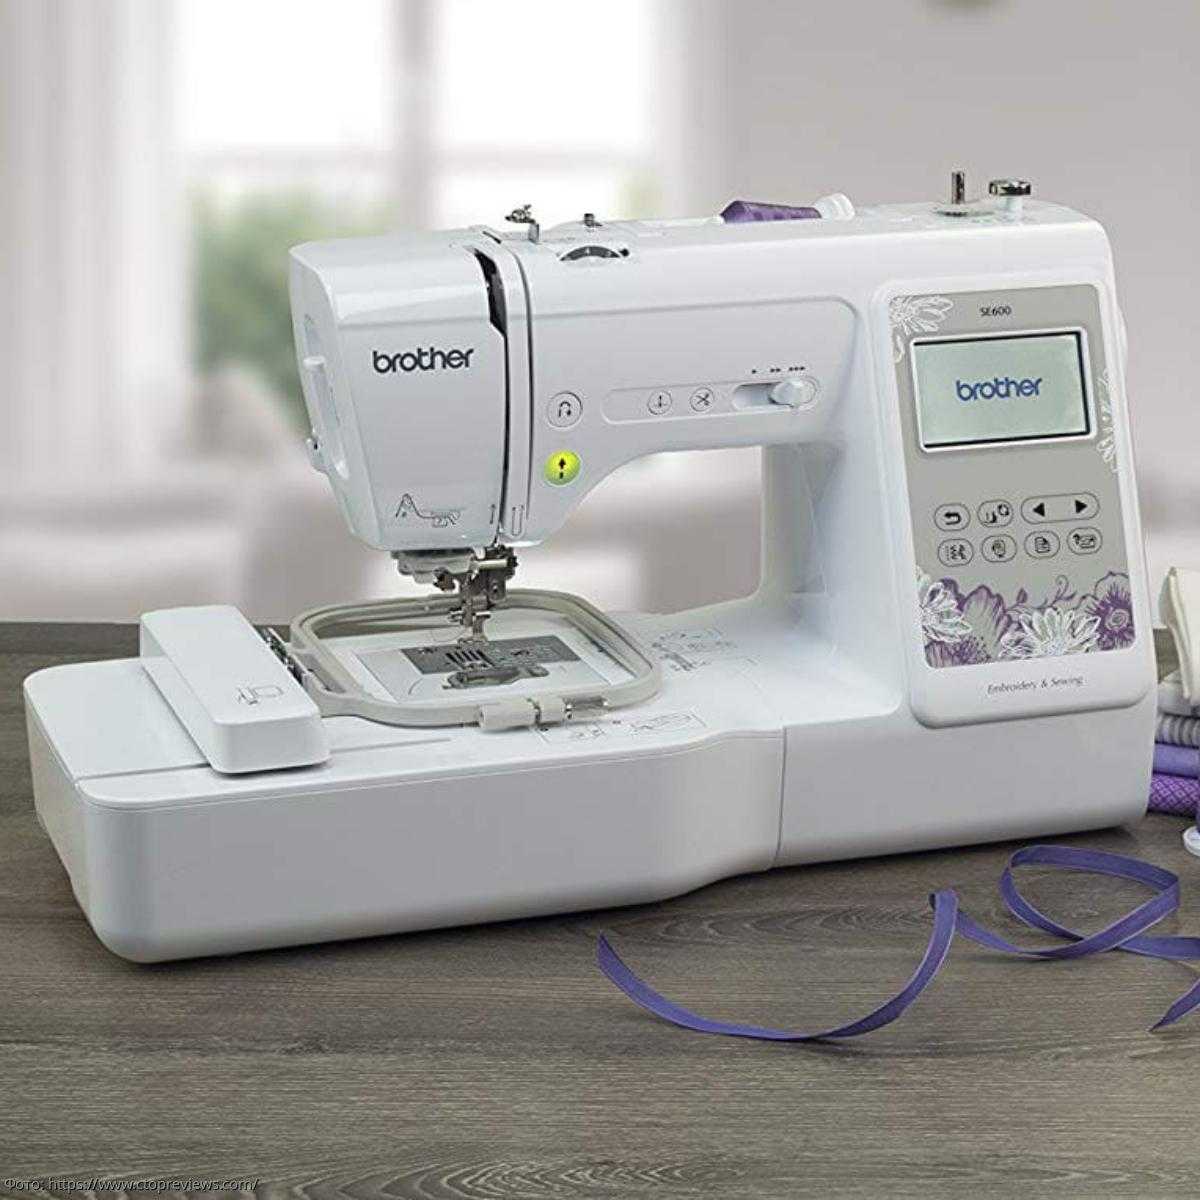 Выбираем швейную машинку brother: рейтинг с обзорами, плюсы и минусы моделей, виды и особенности